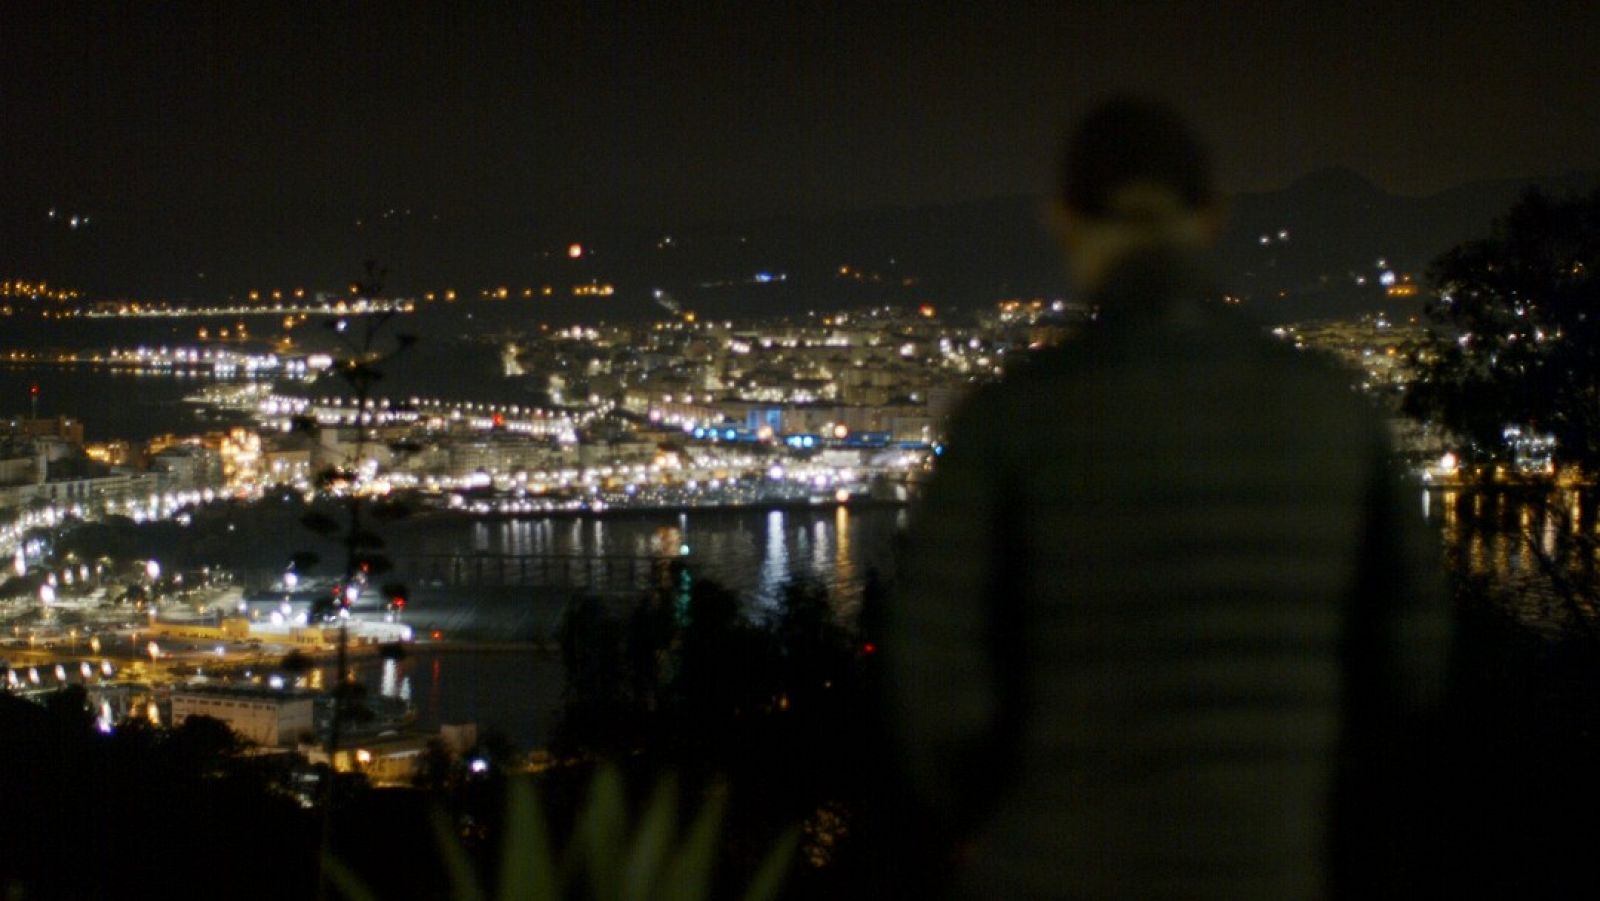 El reclutador de infiltrados en una imagen donde no se le reconoce, de noche, con Ceuta al fondo